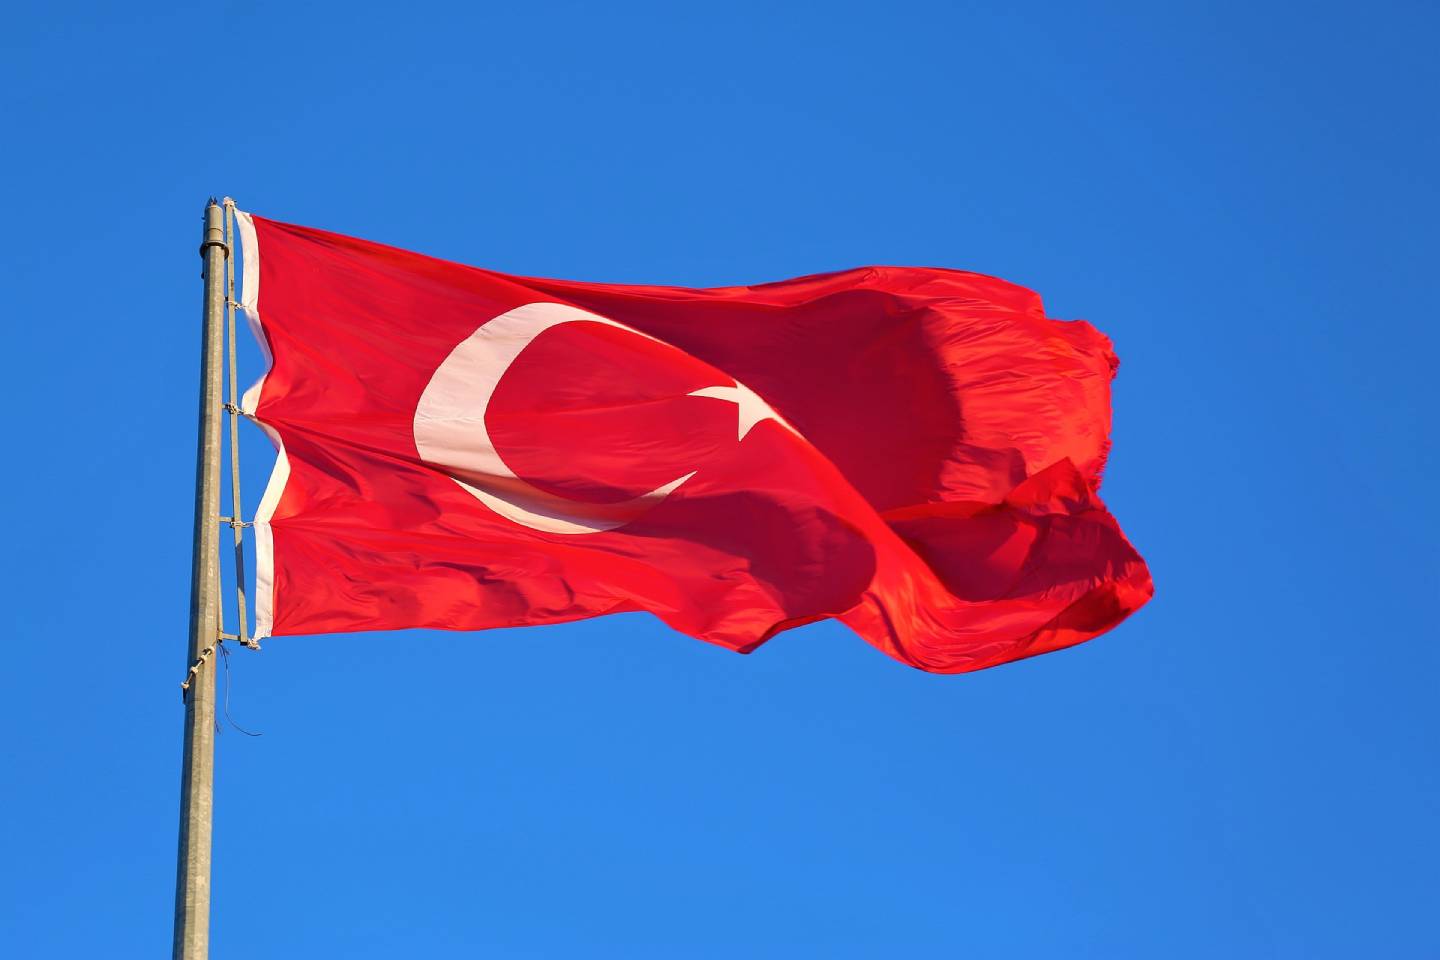 Новости мира / Политика в мире / С сегодняшнего дня из Астаны можно напрямую долететь до столицы Турции